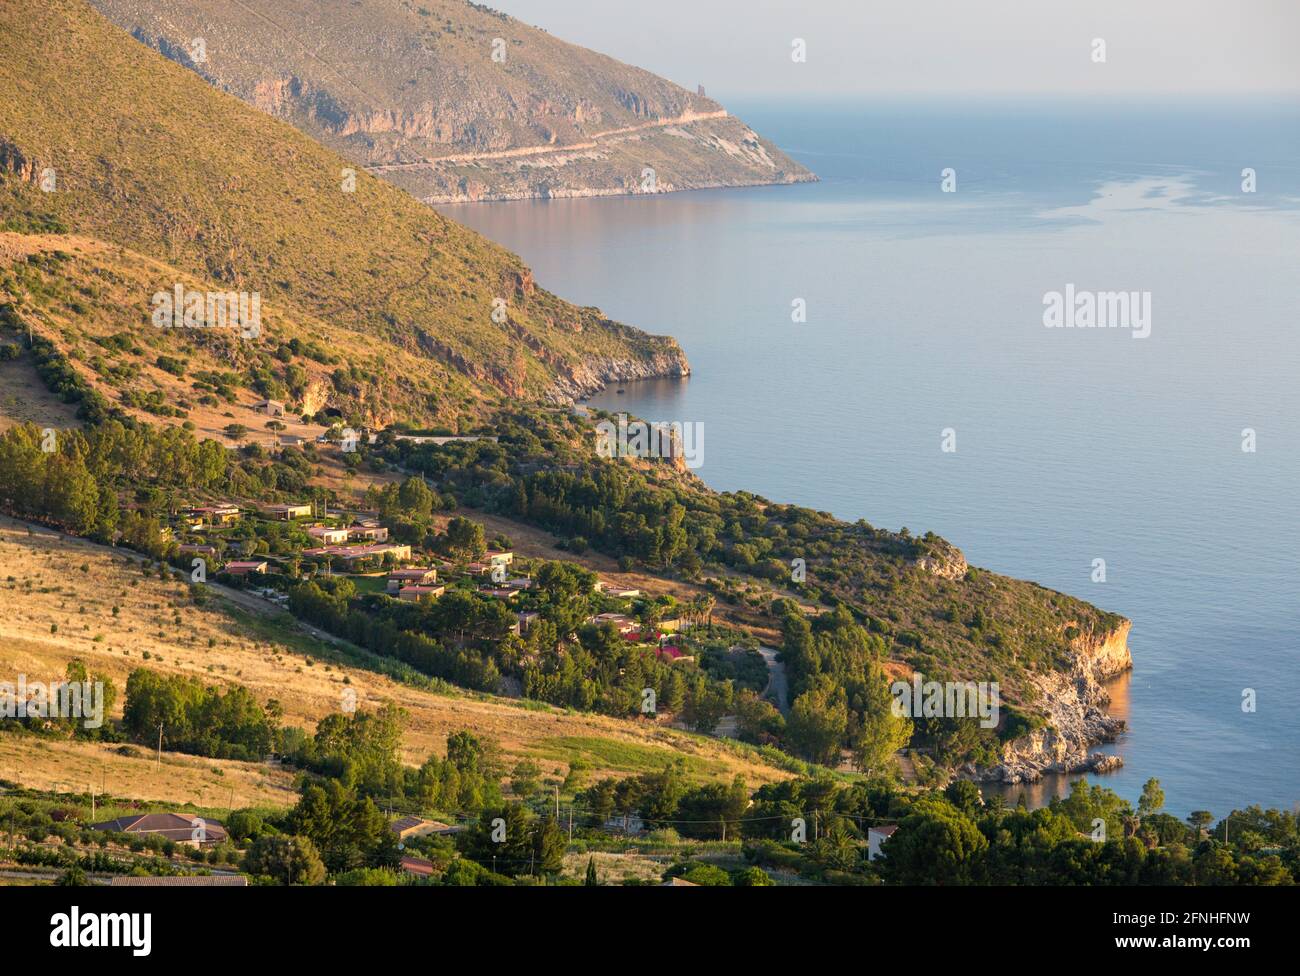 Scopello, Trapani, Sicilia, Italia. Vista dalla Torre Bennistra sulla costa del Golfo di Castellammare alla Riserva Naturale Zingaro, alba. Foto Stock